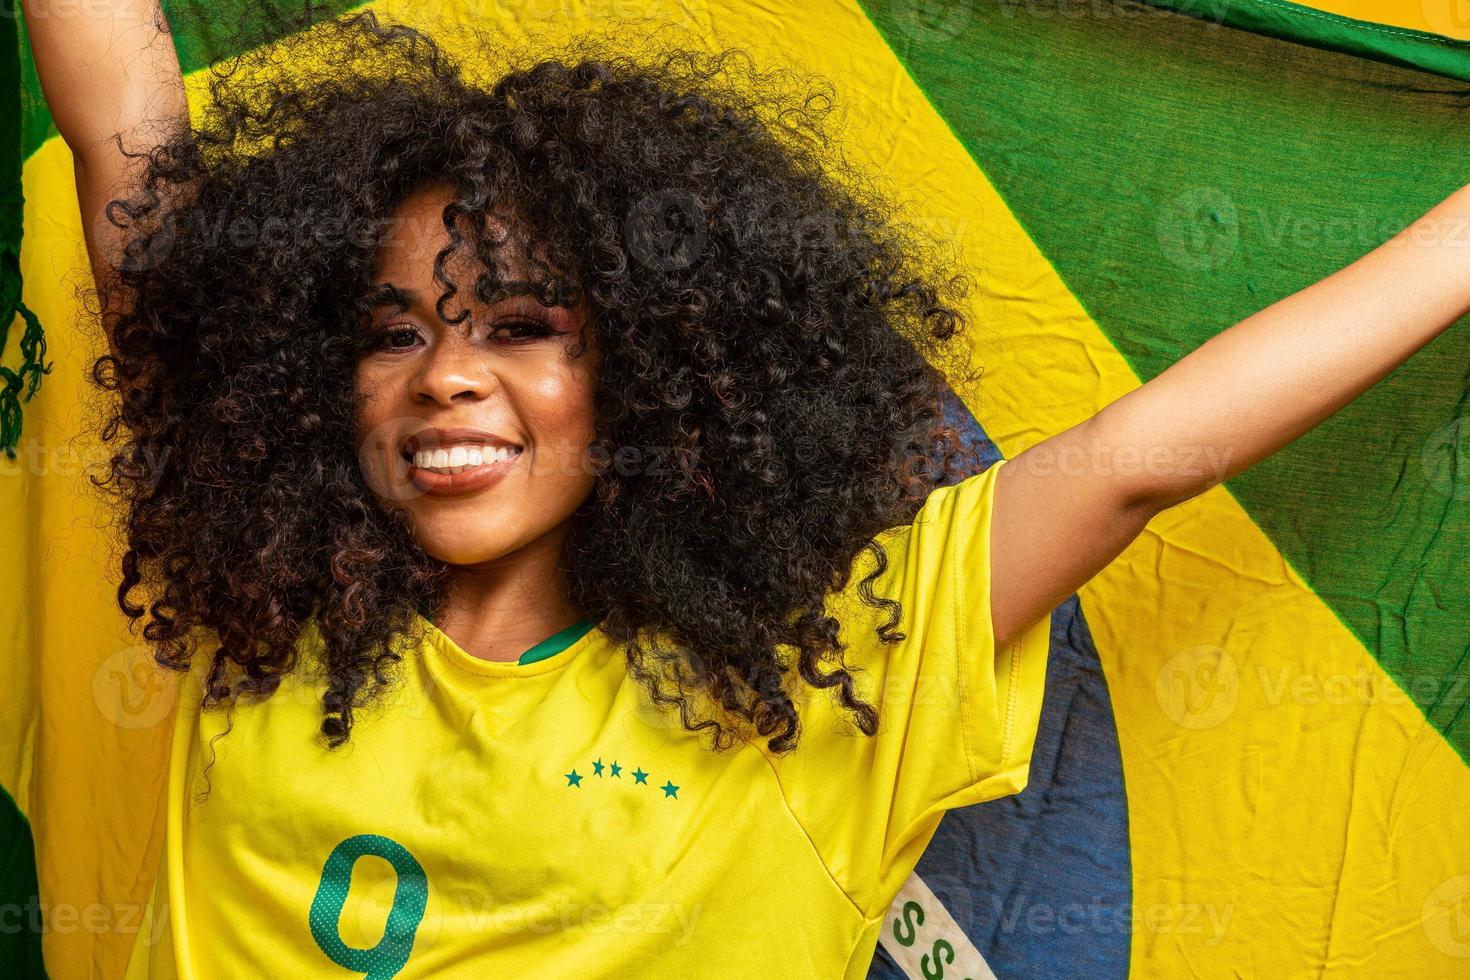 afro girl acclamant l'équipe brésilienne préférée, tenant le drapeau national sur fond jaune. photo